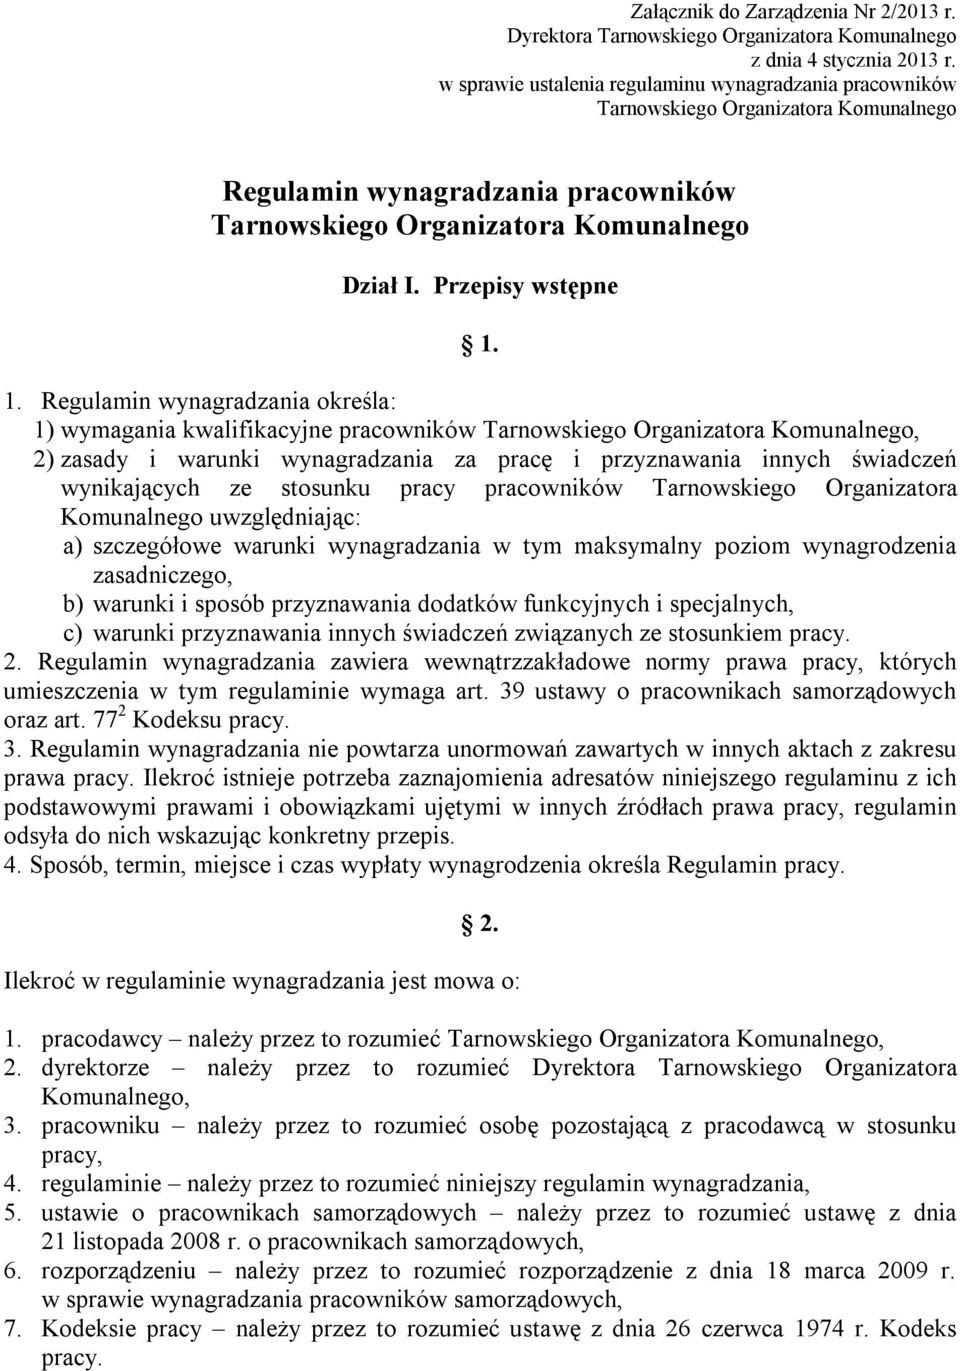 1. Regulamin wynagradzania określa: 1) wymagania kwalifikacyjne pracowników Tarnowskiego Organizatora Komunalnego, 2) zasady i warunki wynagradzania za pracę i przyznawania innych świadczeń